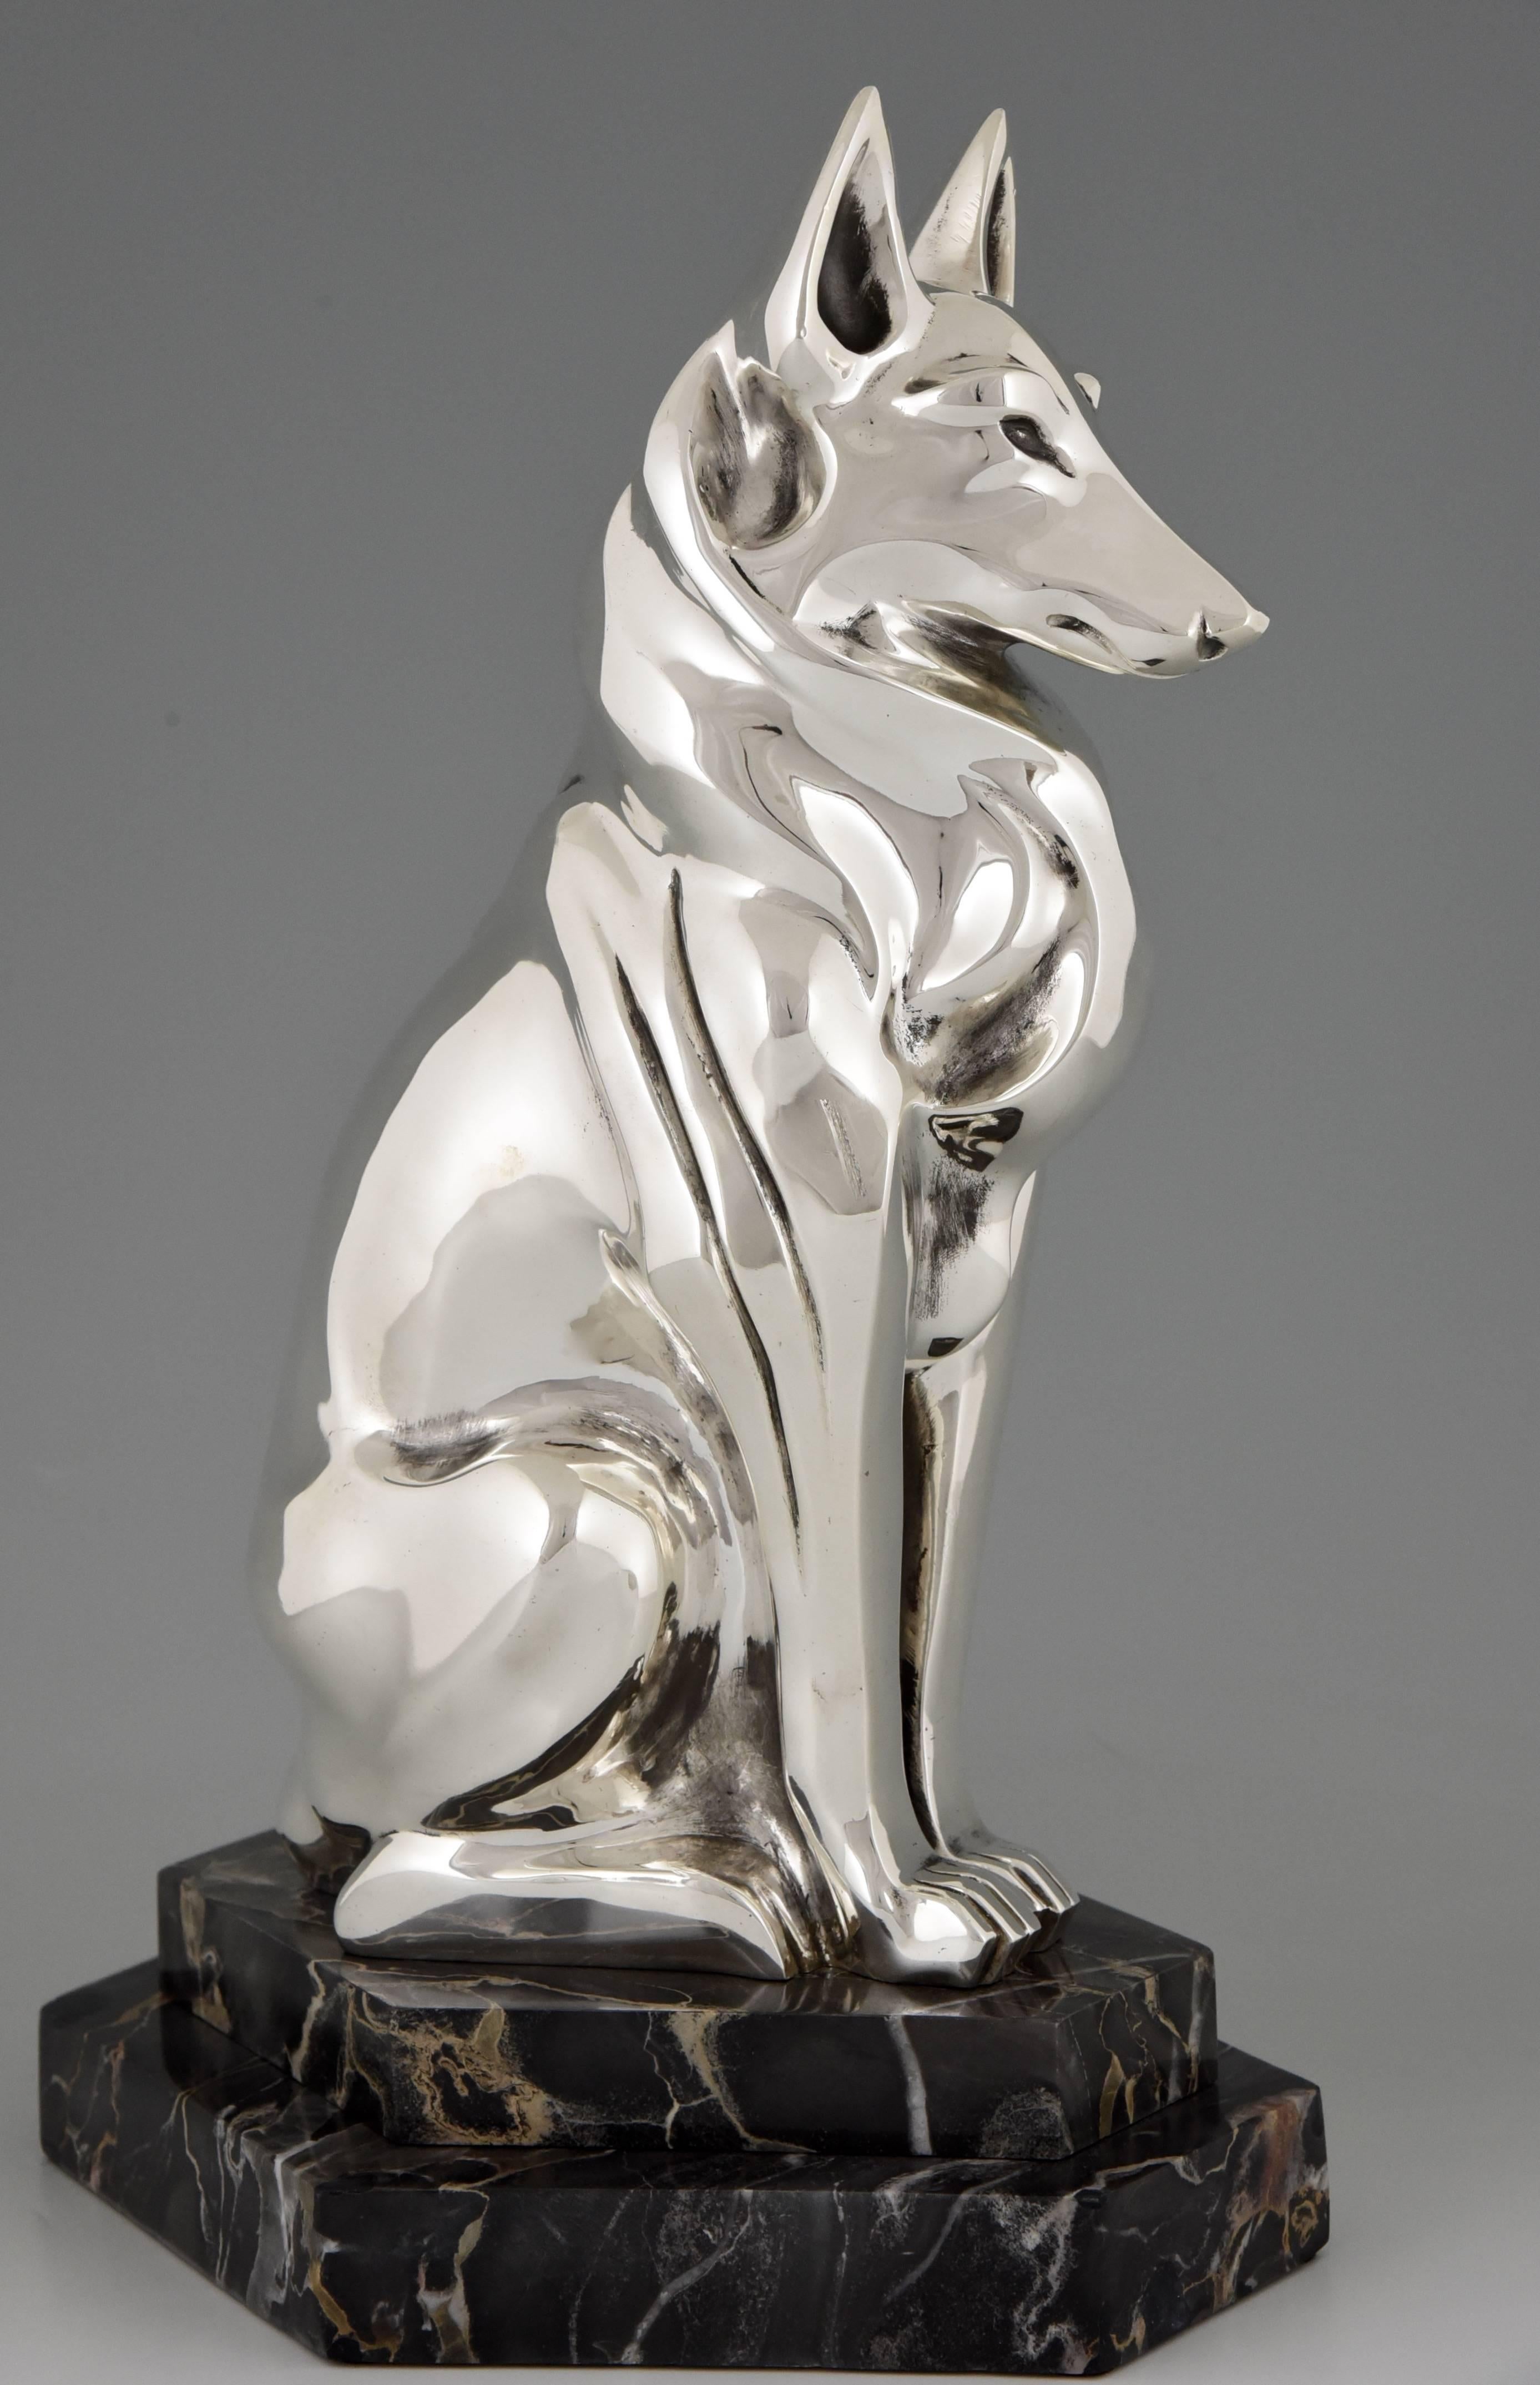 Description: 
Lassie, Art Deco sculpture of sitting Rough Collie dog. 

Artist / Maker:
H. Petrilly. 

Signature / Marks: 
H. Petrilly.
Founders signature Urbain Cie. Editeurs. 

Style:
Art Deco.

Date:
1925/1930.

Material: